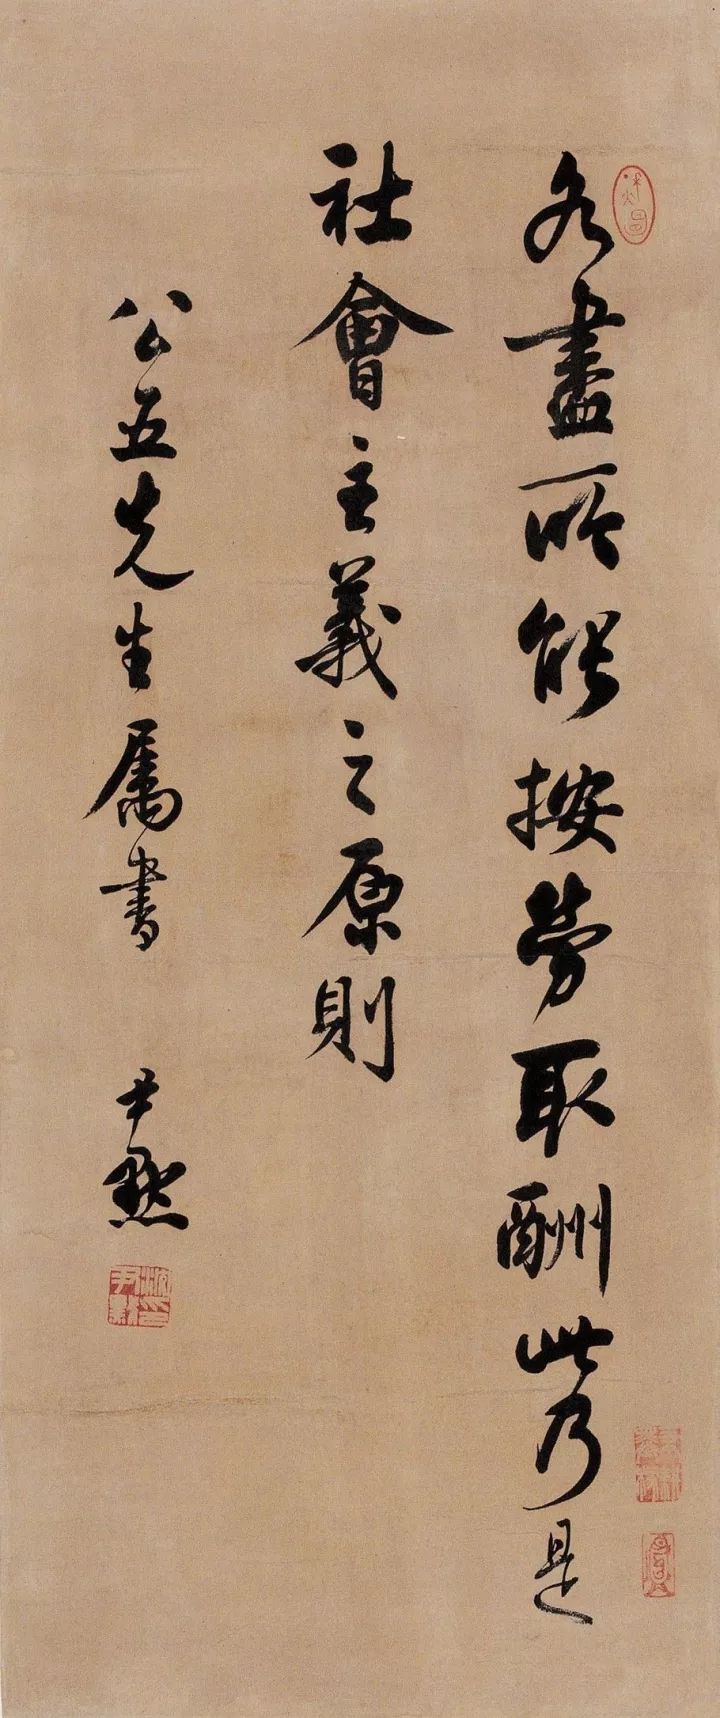 沈尹默|百年弹指,尹师的书法艺术传之不朽